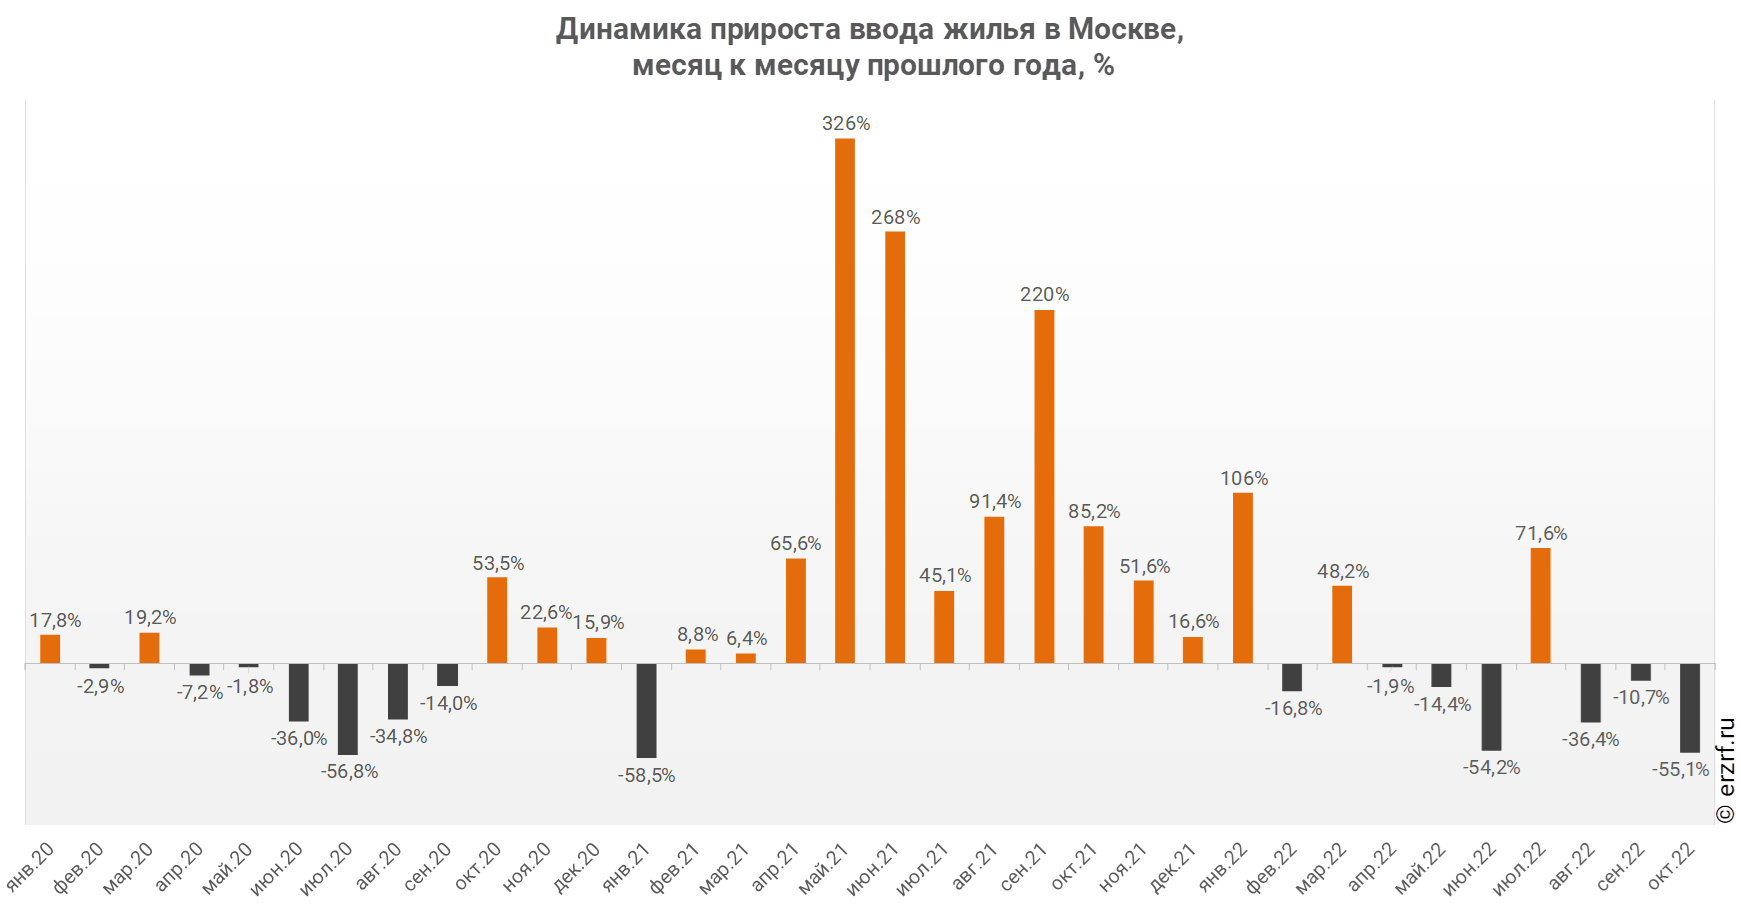 Динамика прироста ввода жилья в Москве,
 месяц к месяцу прошлого года, %